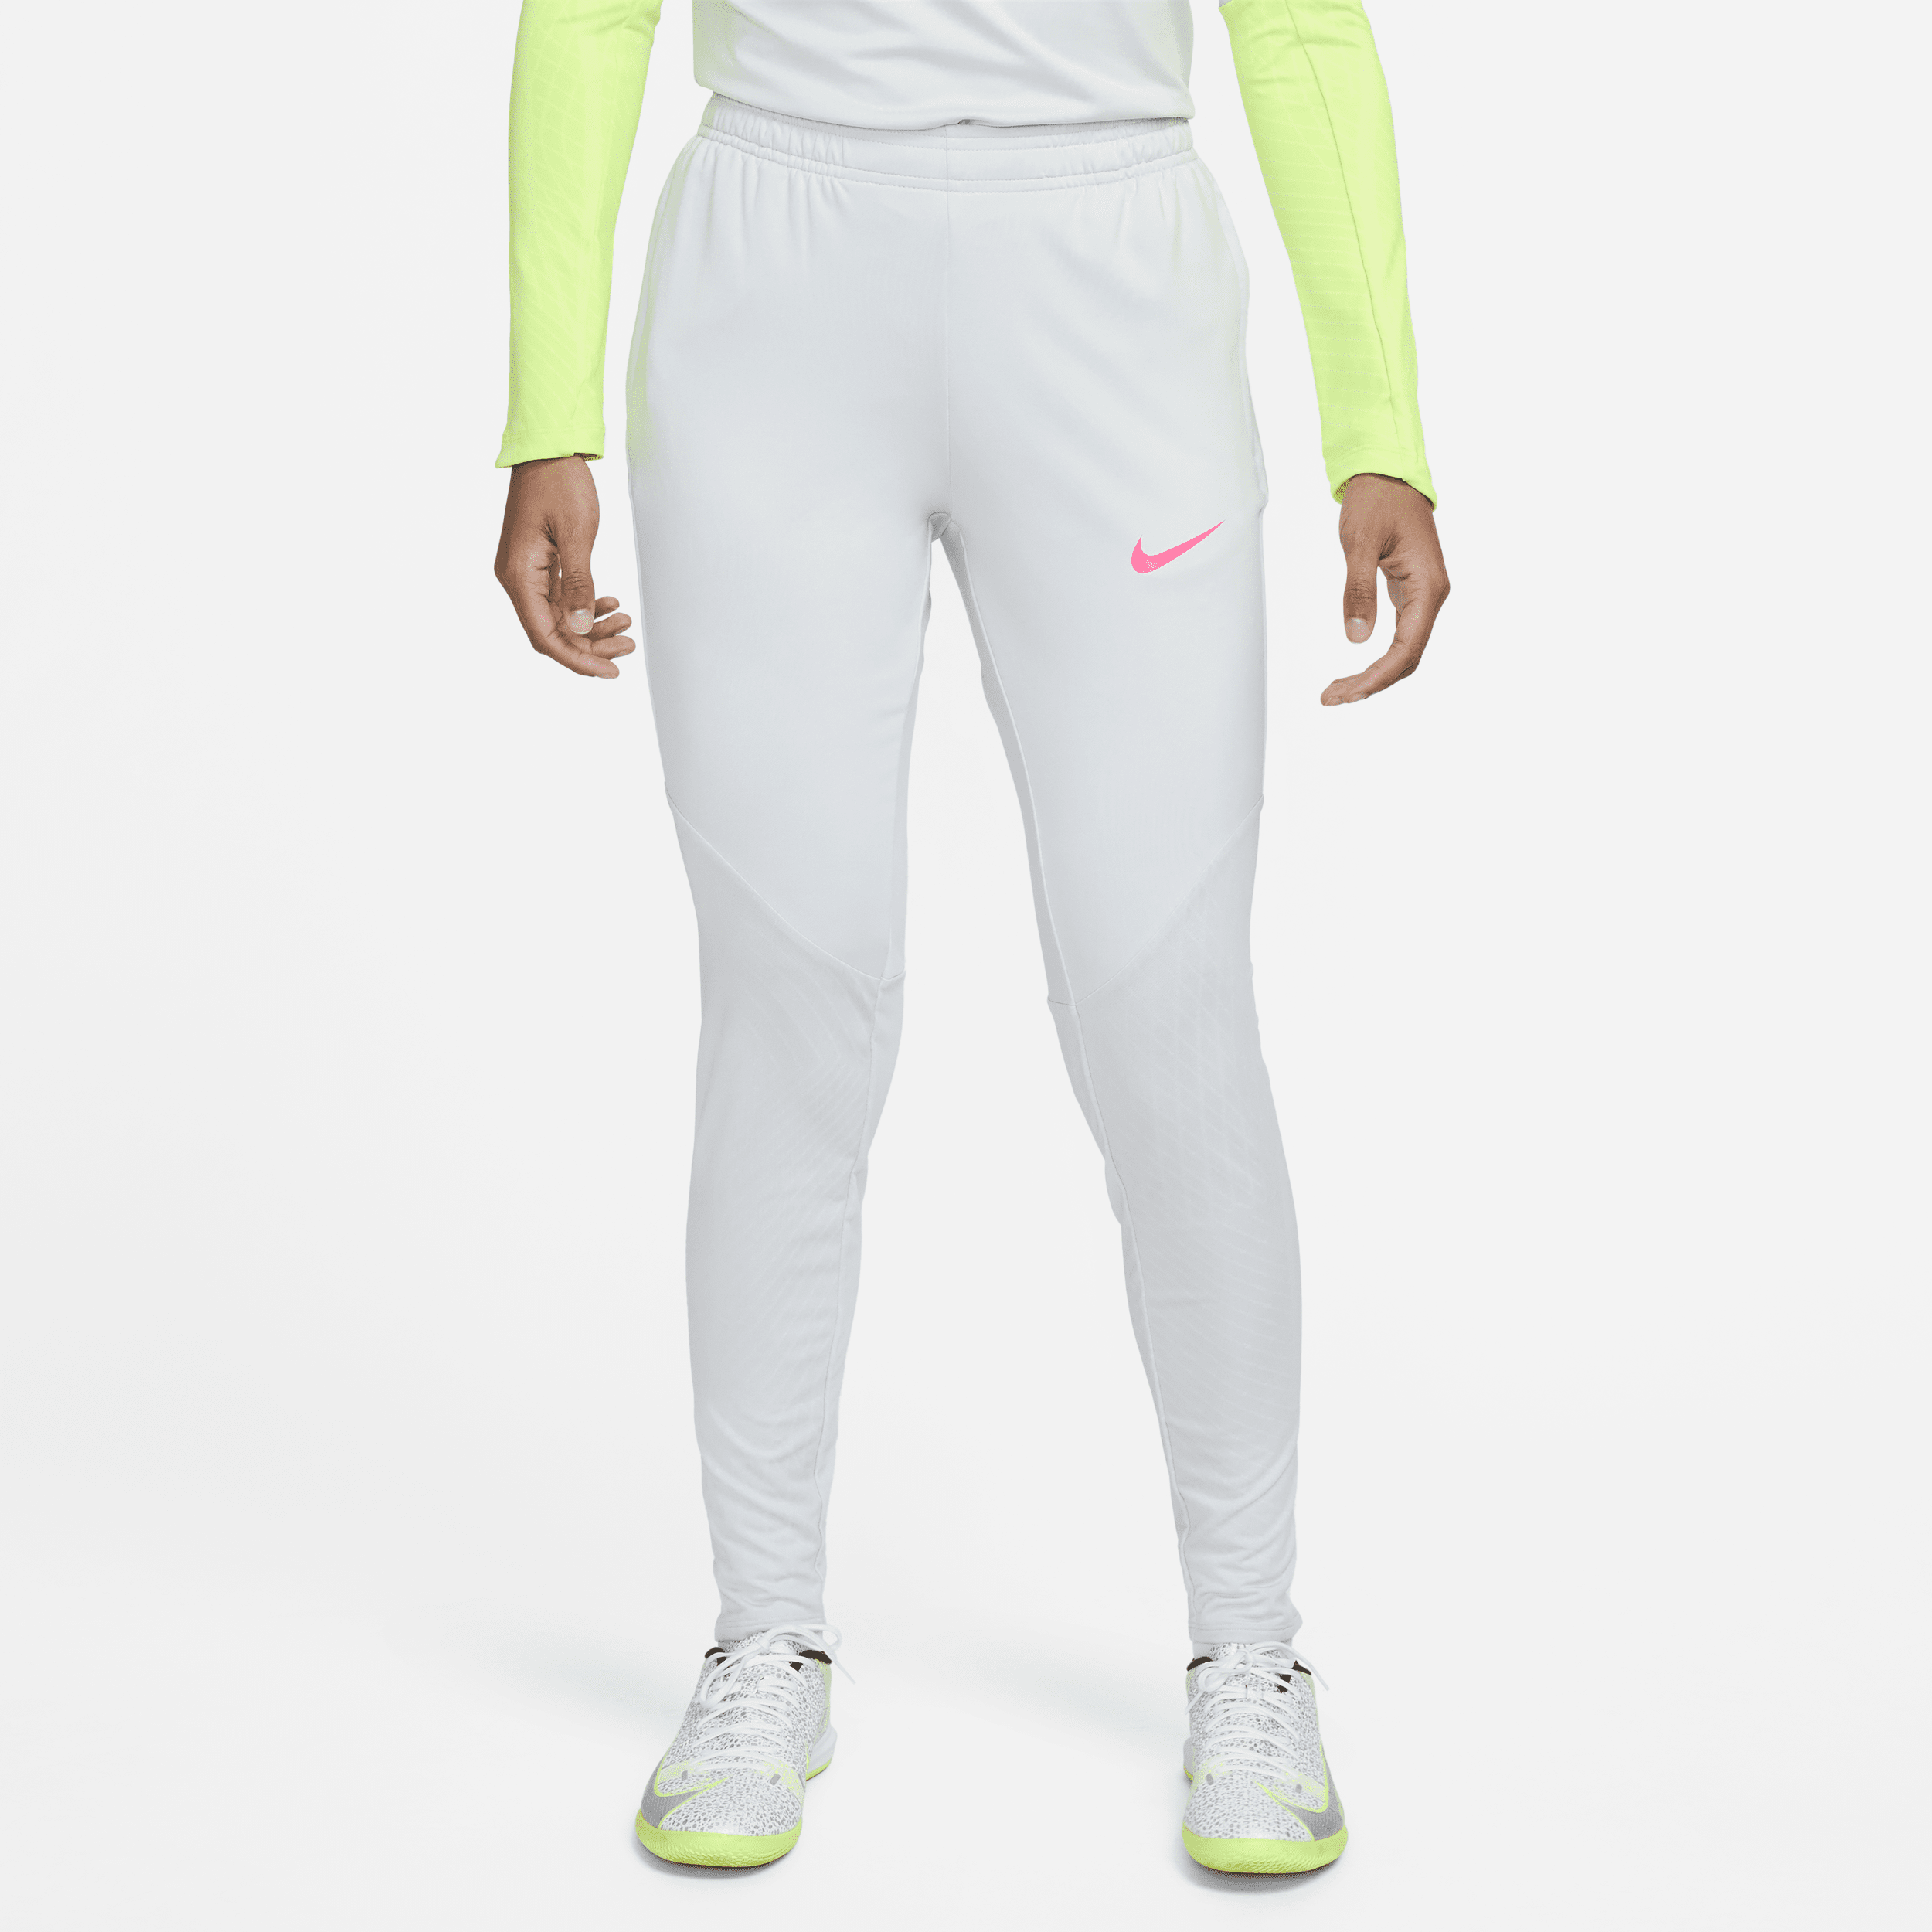 Nike Women's Dri-fit Strike Soccer Pants In Grey